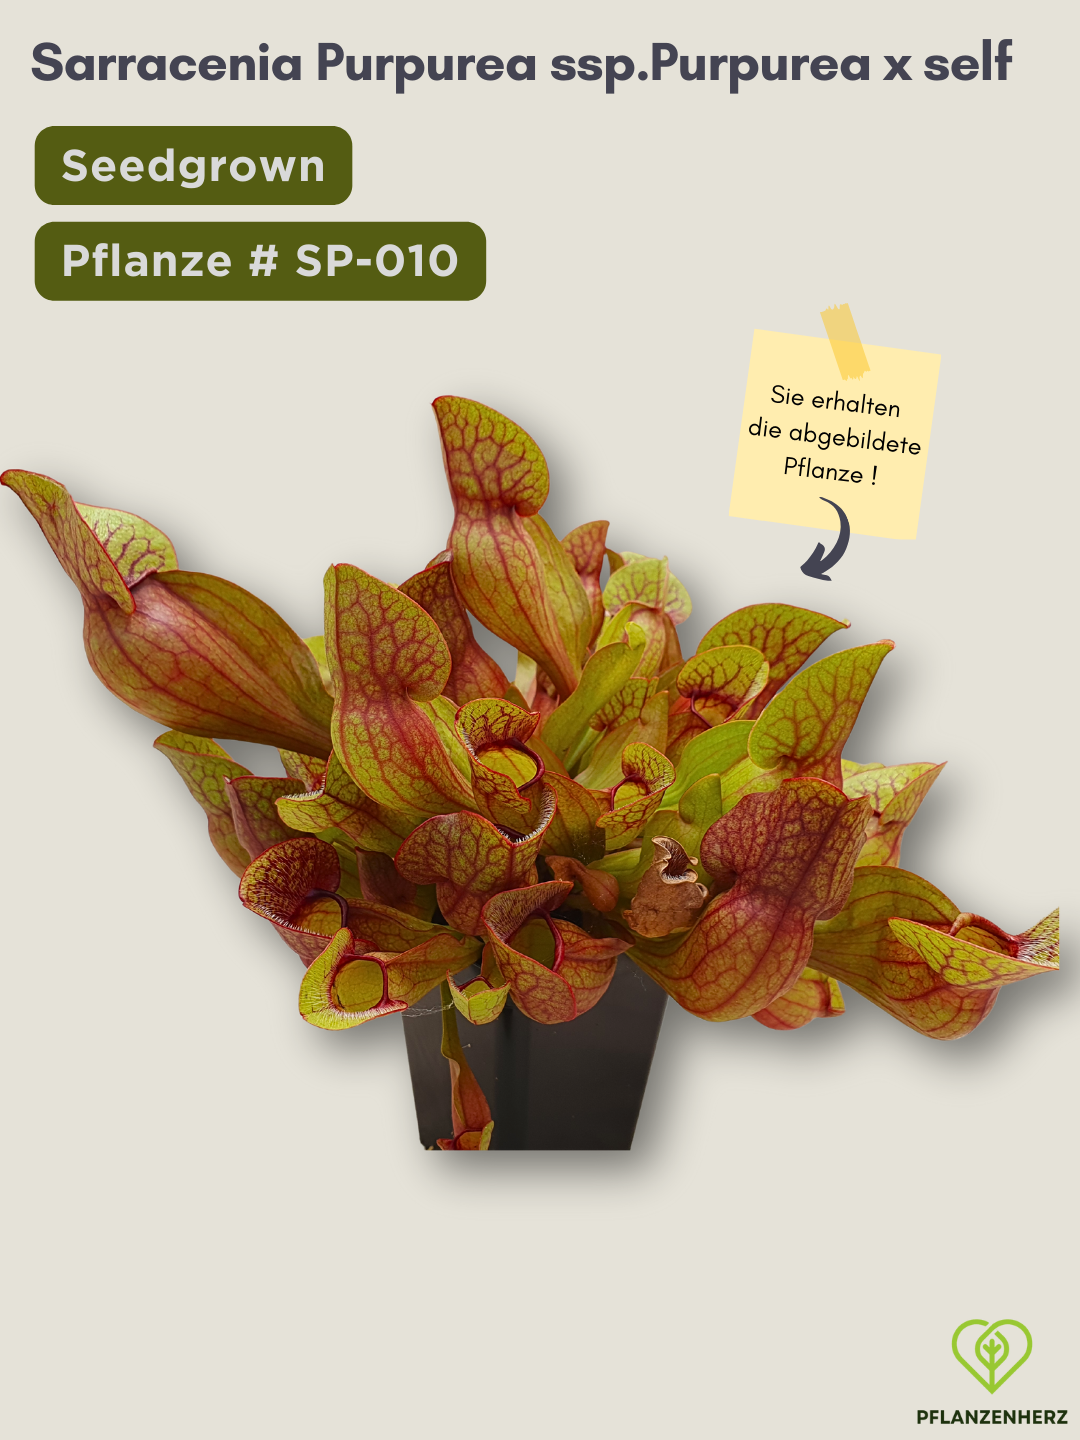 Sarracenia purpurea ssp. purpurea x self  - seedgrown #SP-010